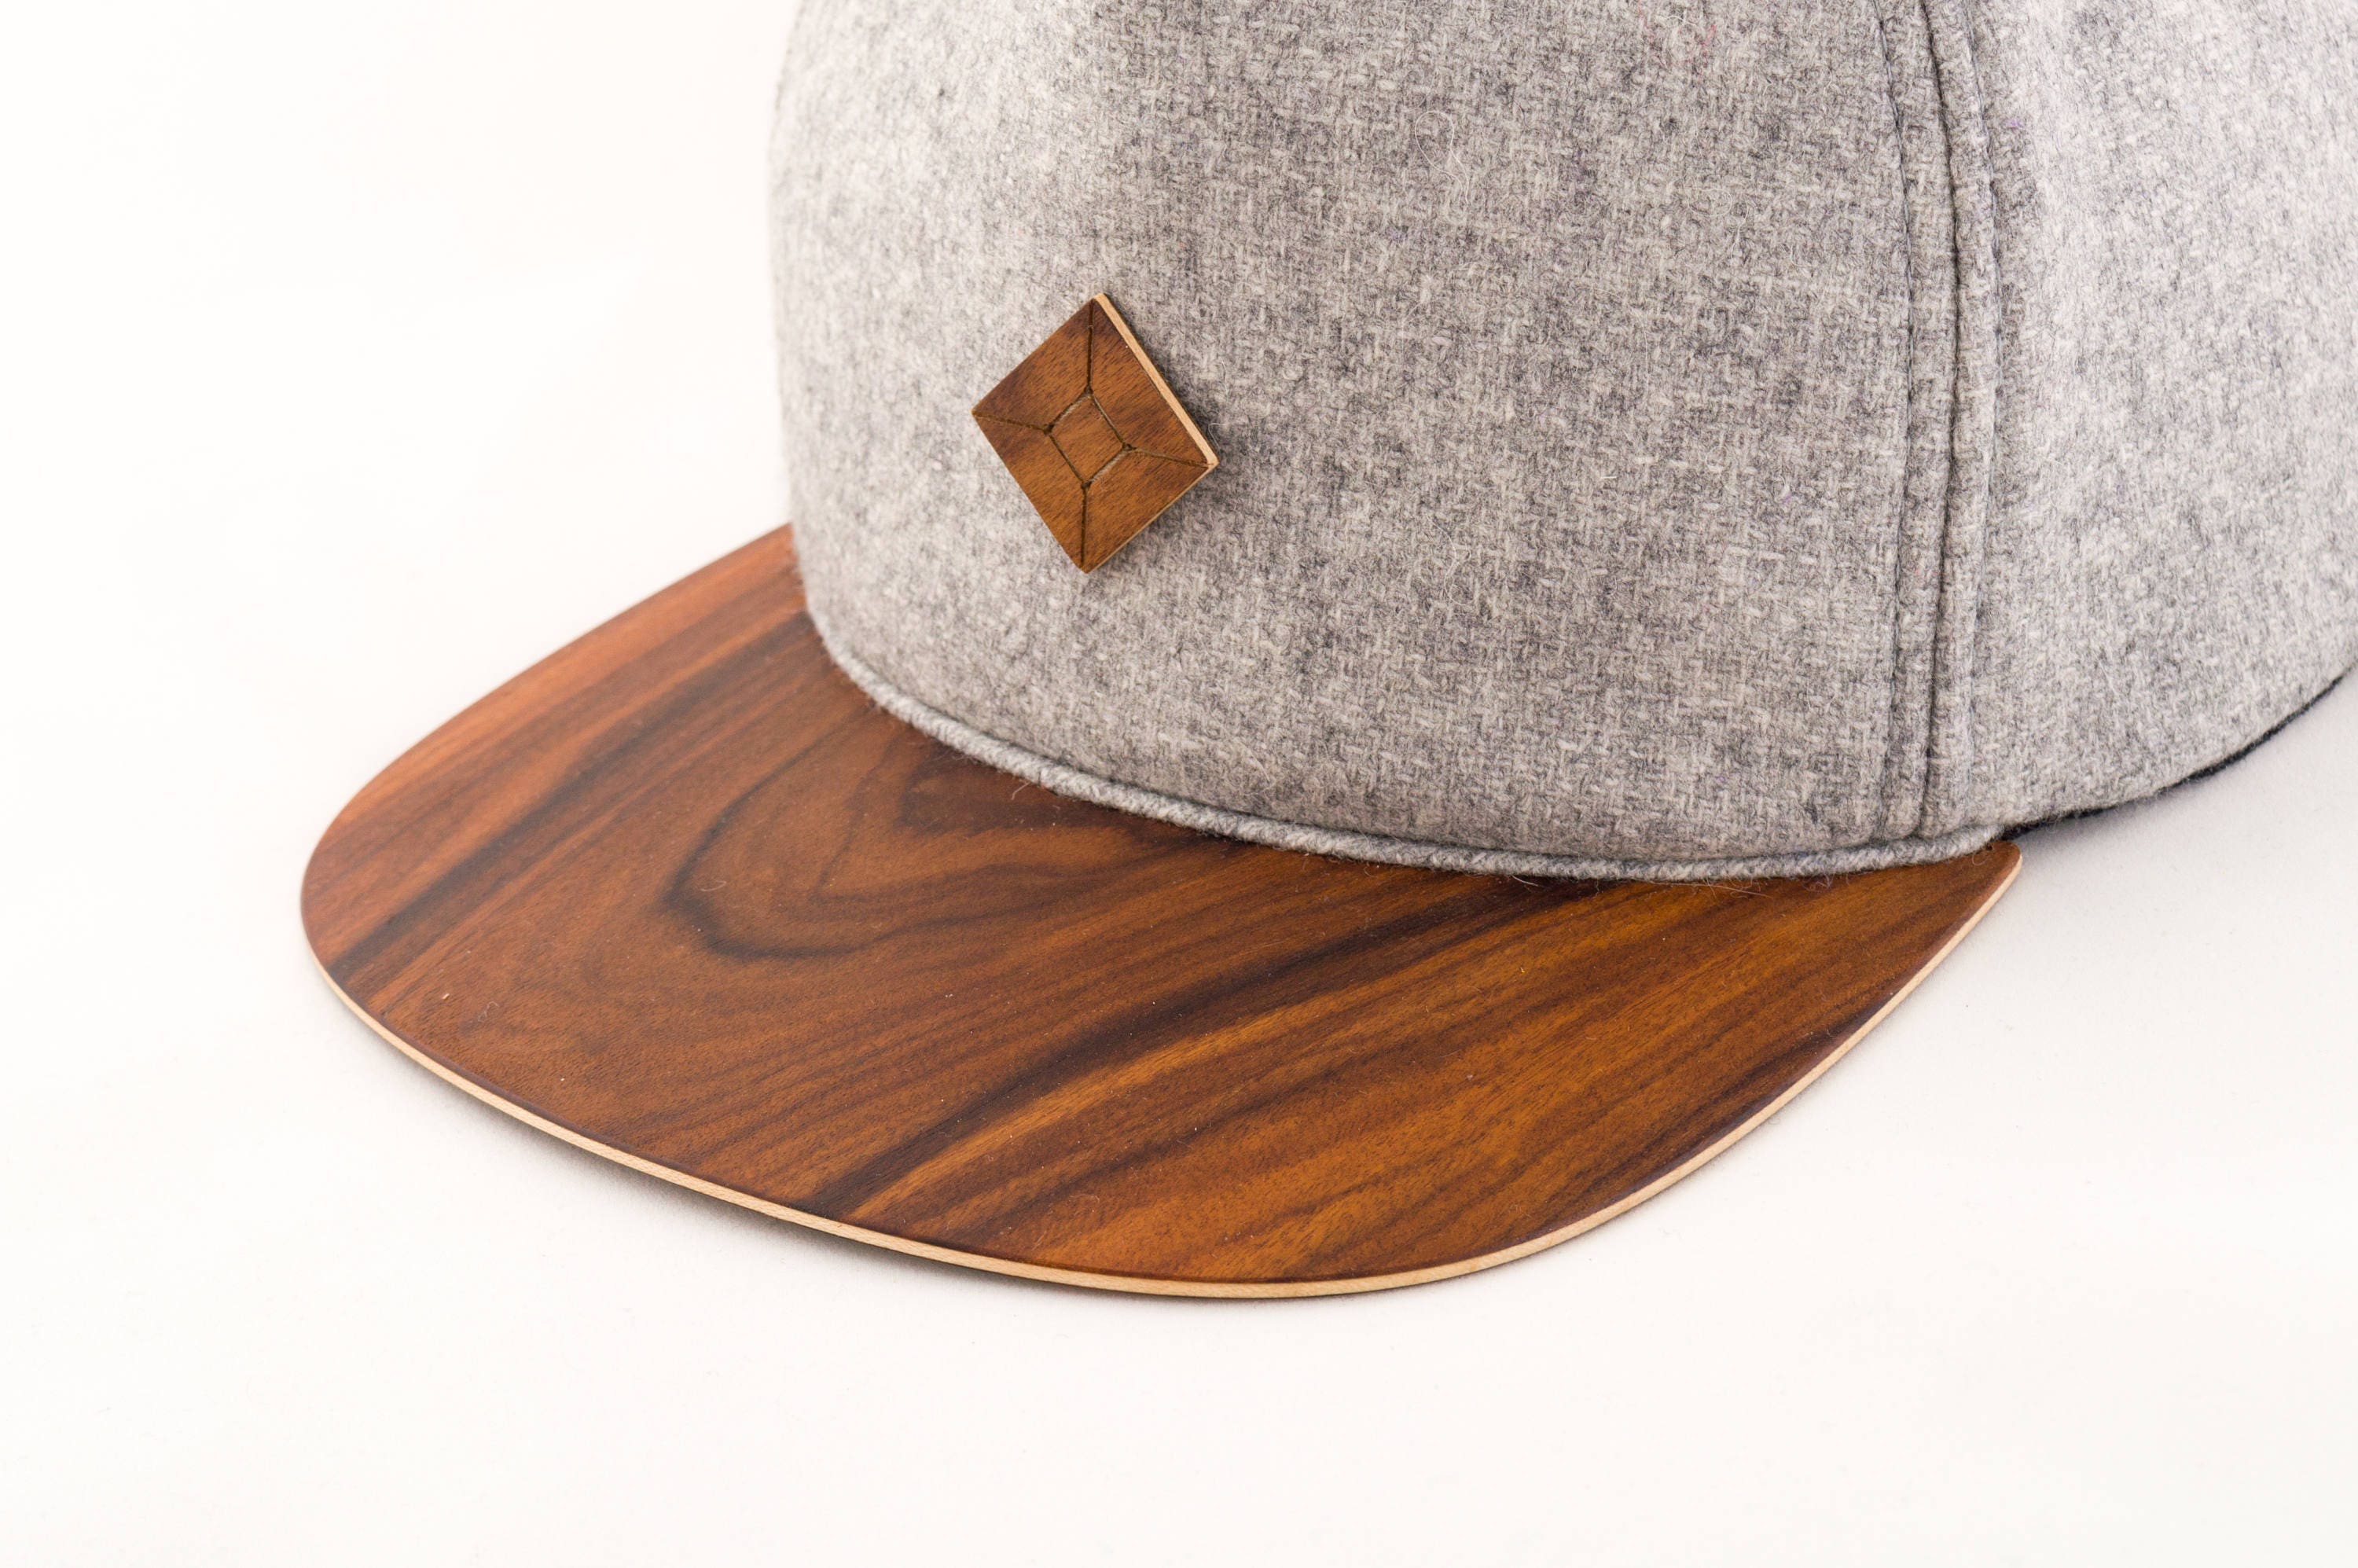 snapback hats Walnut Brim Wood Brim Snapback Hats Accessories Hats & Caps Baseball & Trucker Caps baseball caps 